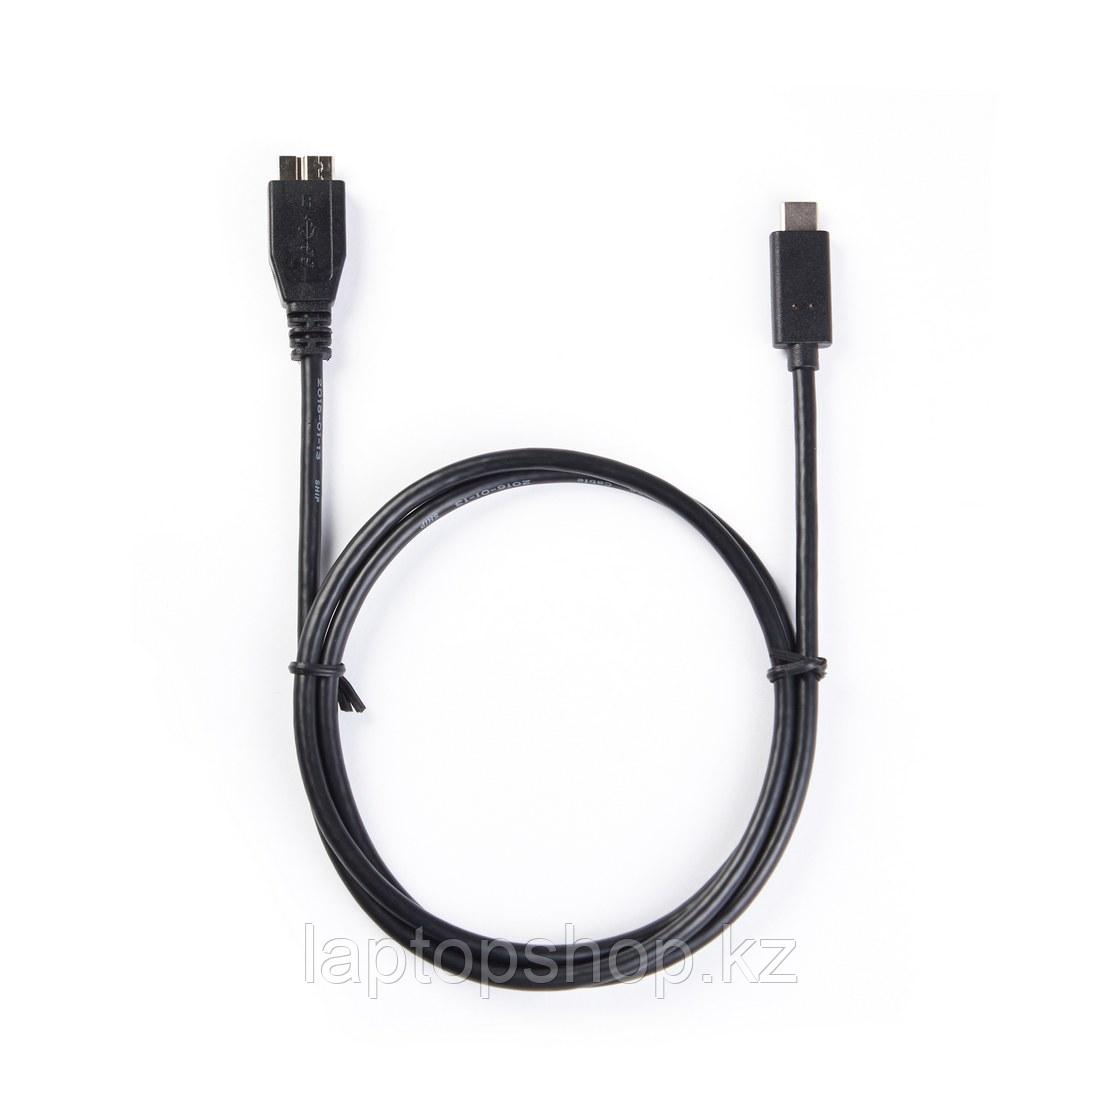 Интерфейсный кабель SHIP USB308-1P, MICRO-B USB на USB-C 3.1, фото 1